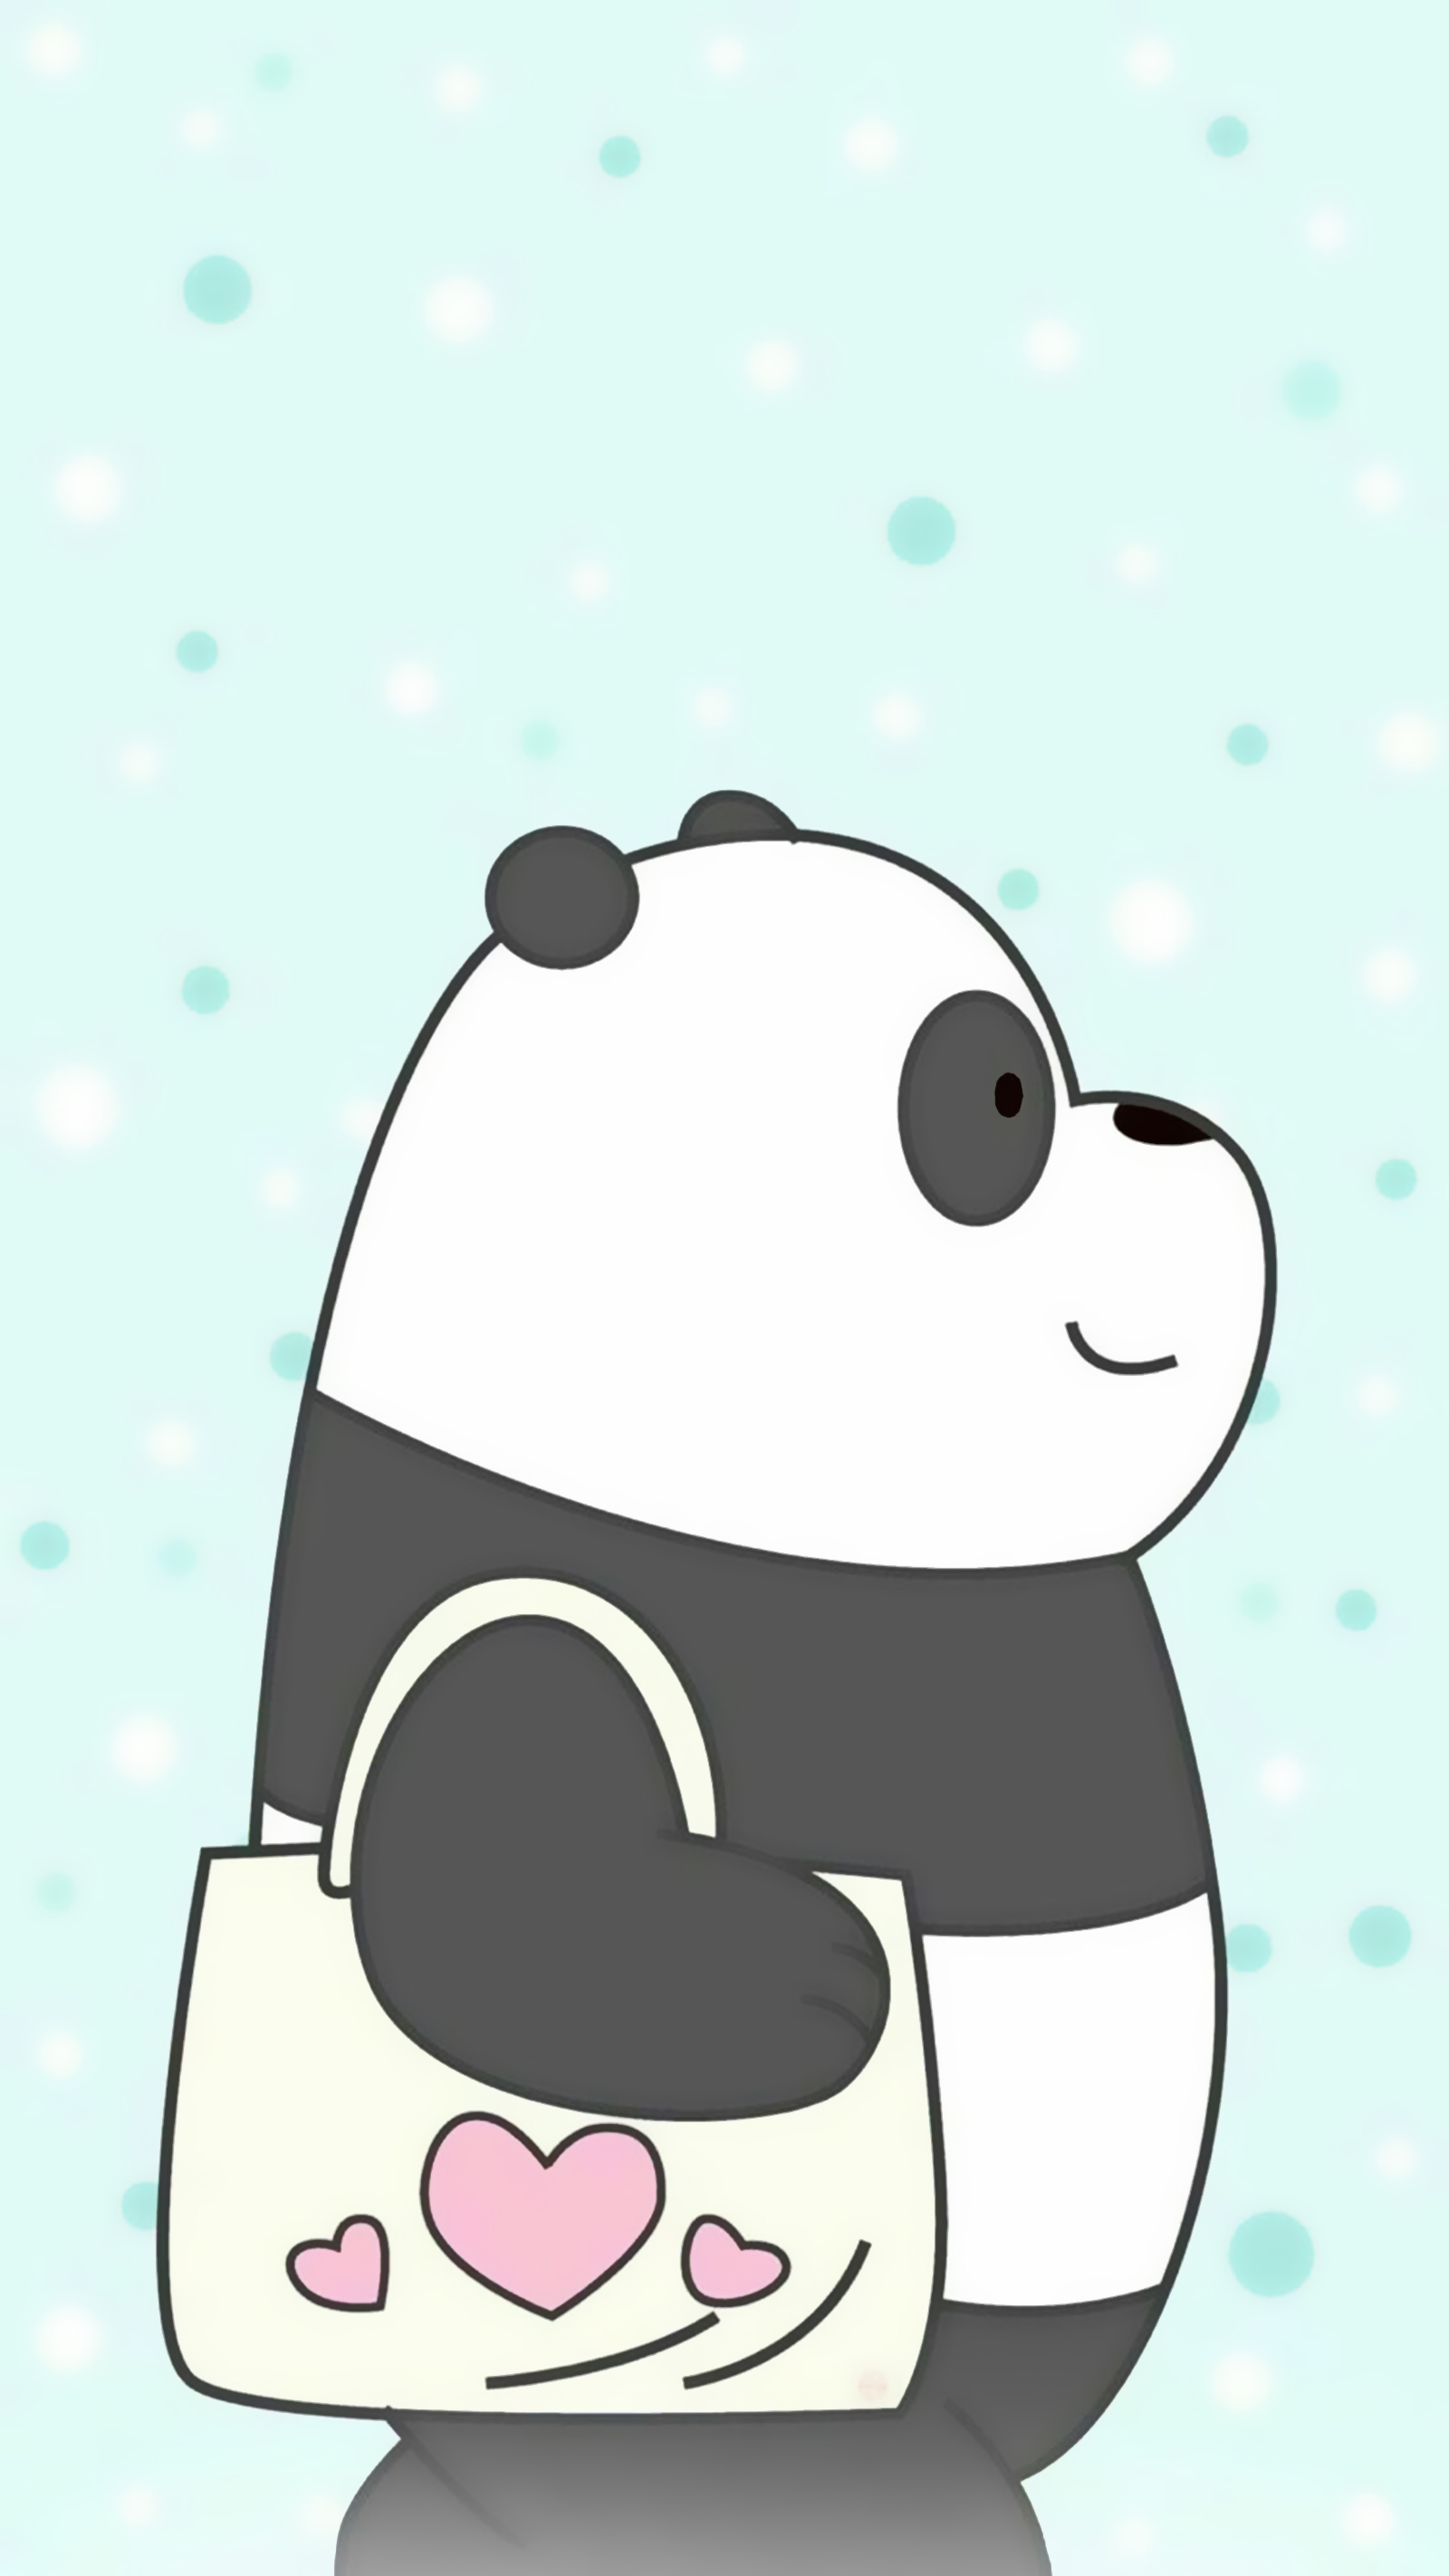 Ảnh nền gấu trúc Panda dễ thương nhất